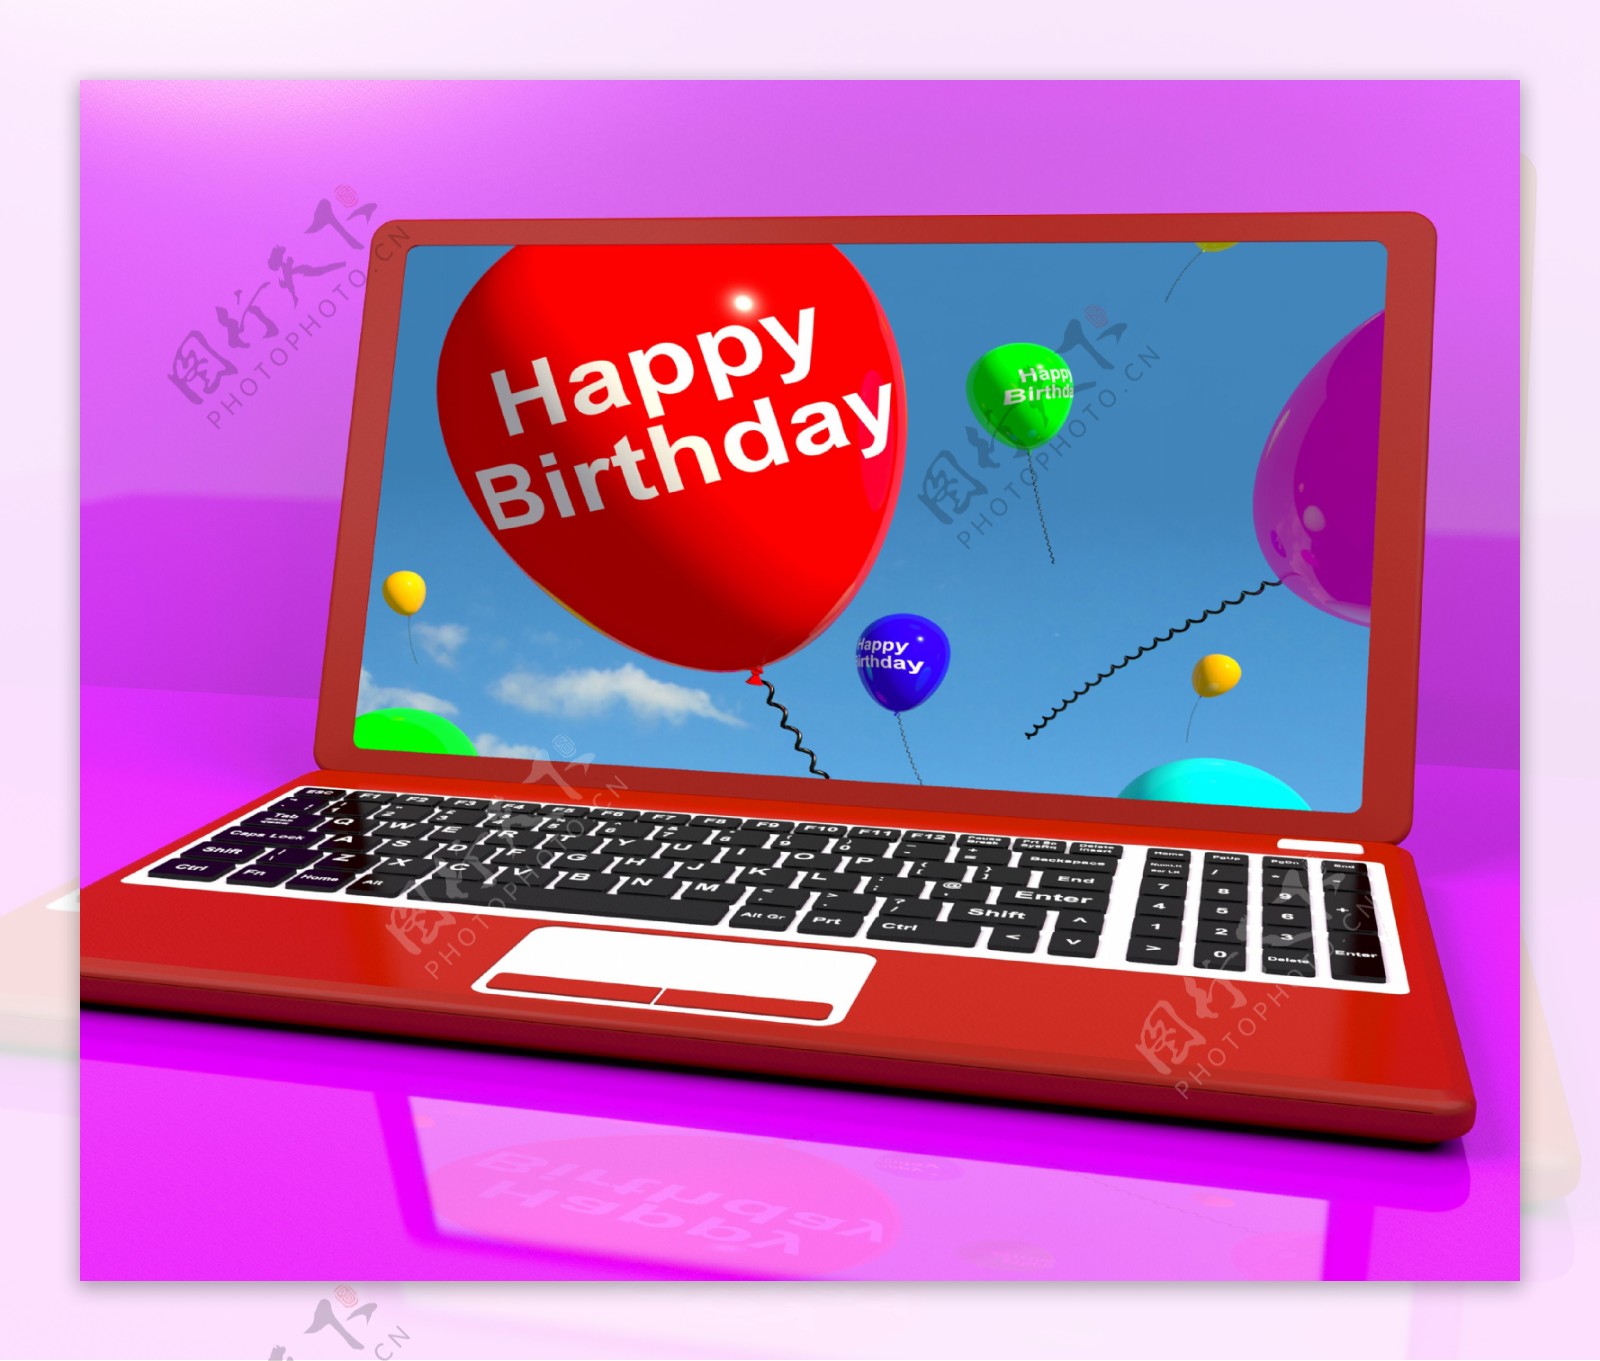 生日快乐的气球在笔记本电脑的屏幕上显示的电子贺卡